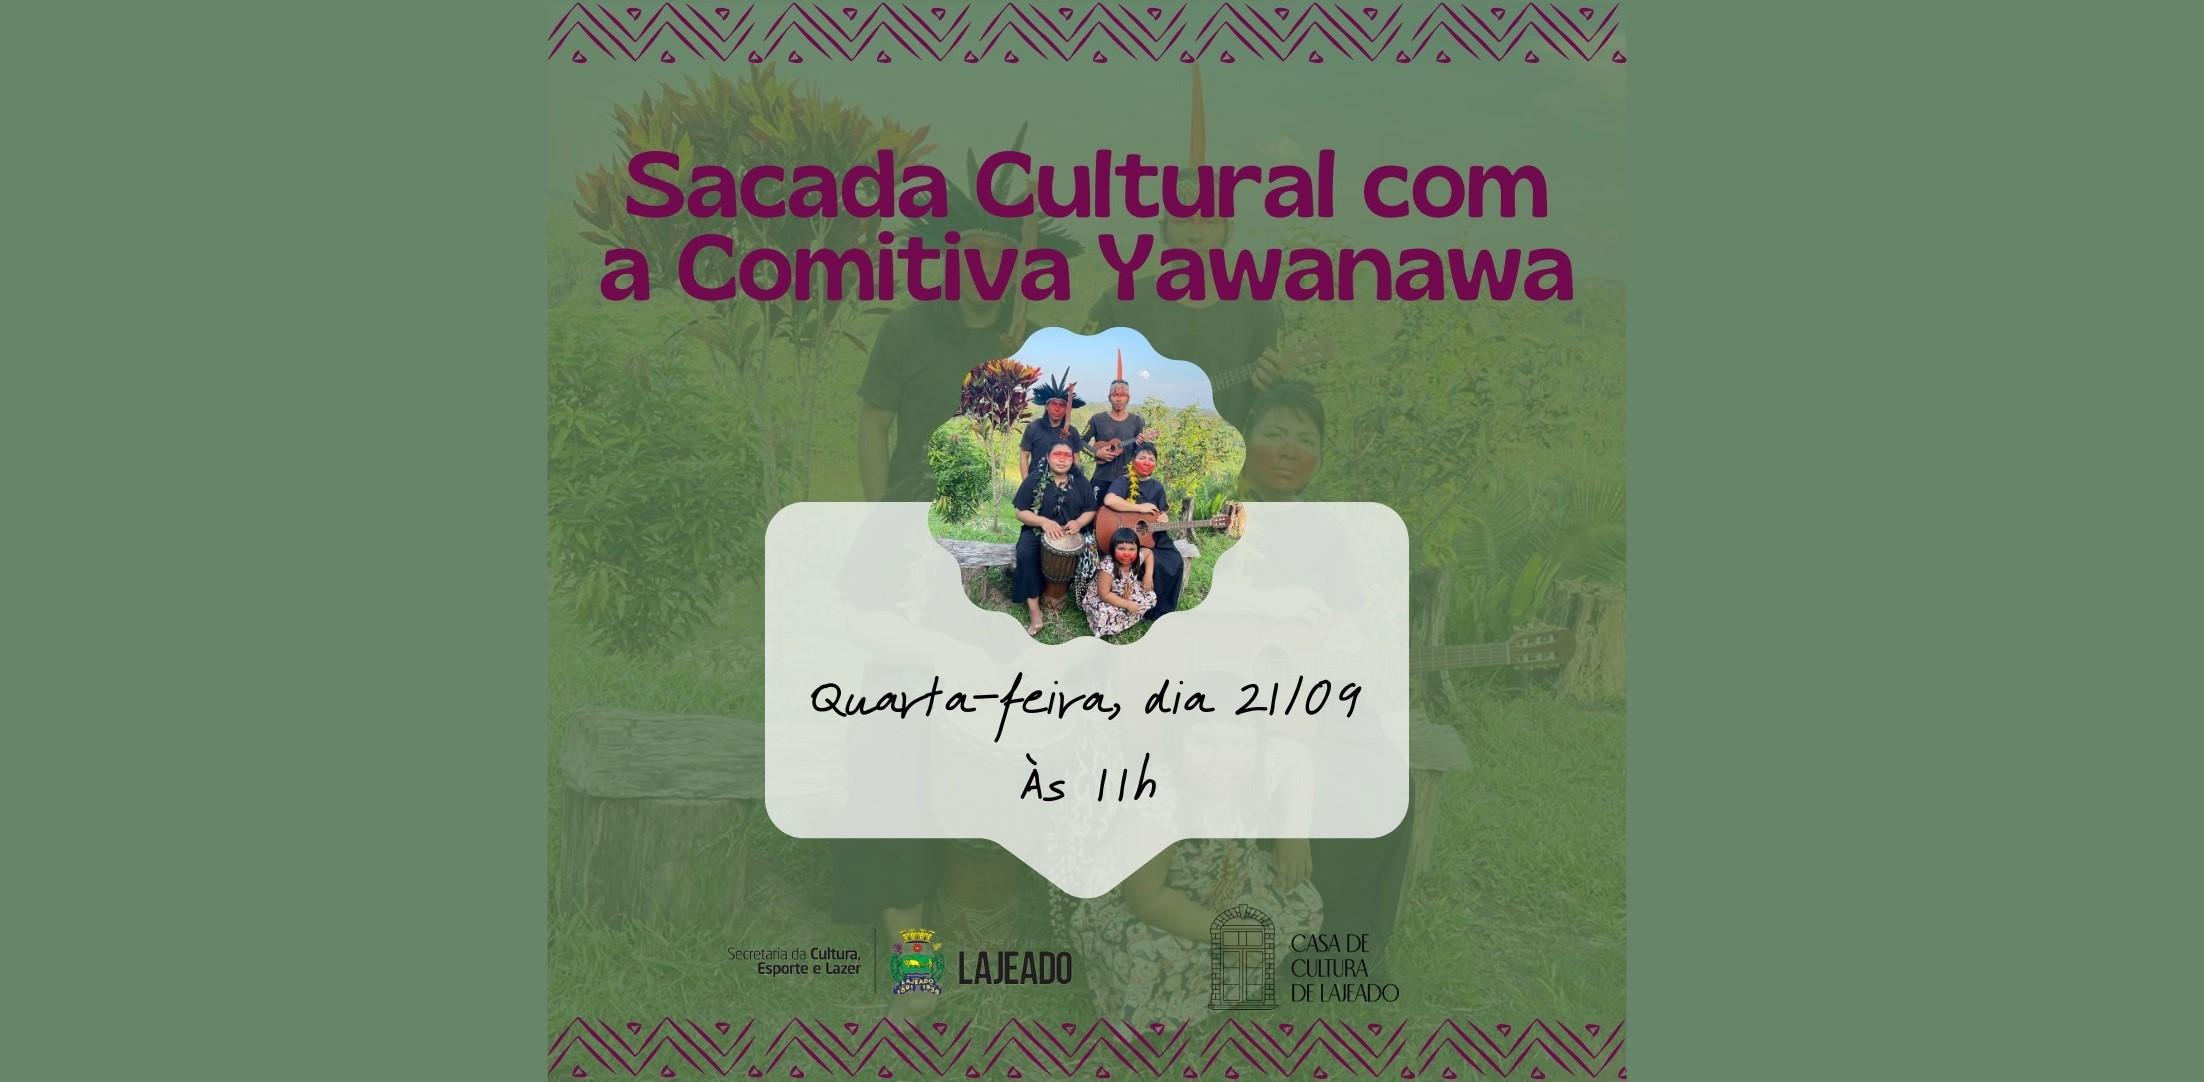 Projeto Sacada Cultural recebe comitiva indígena do Acre